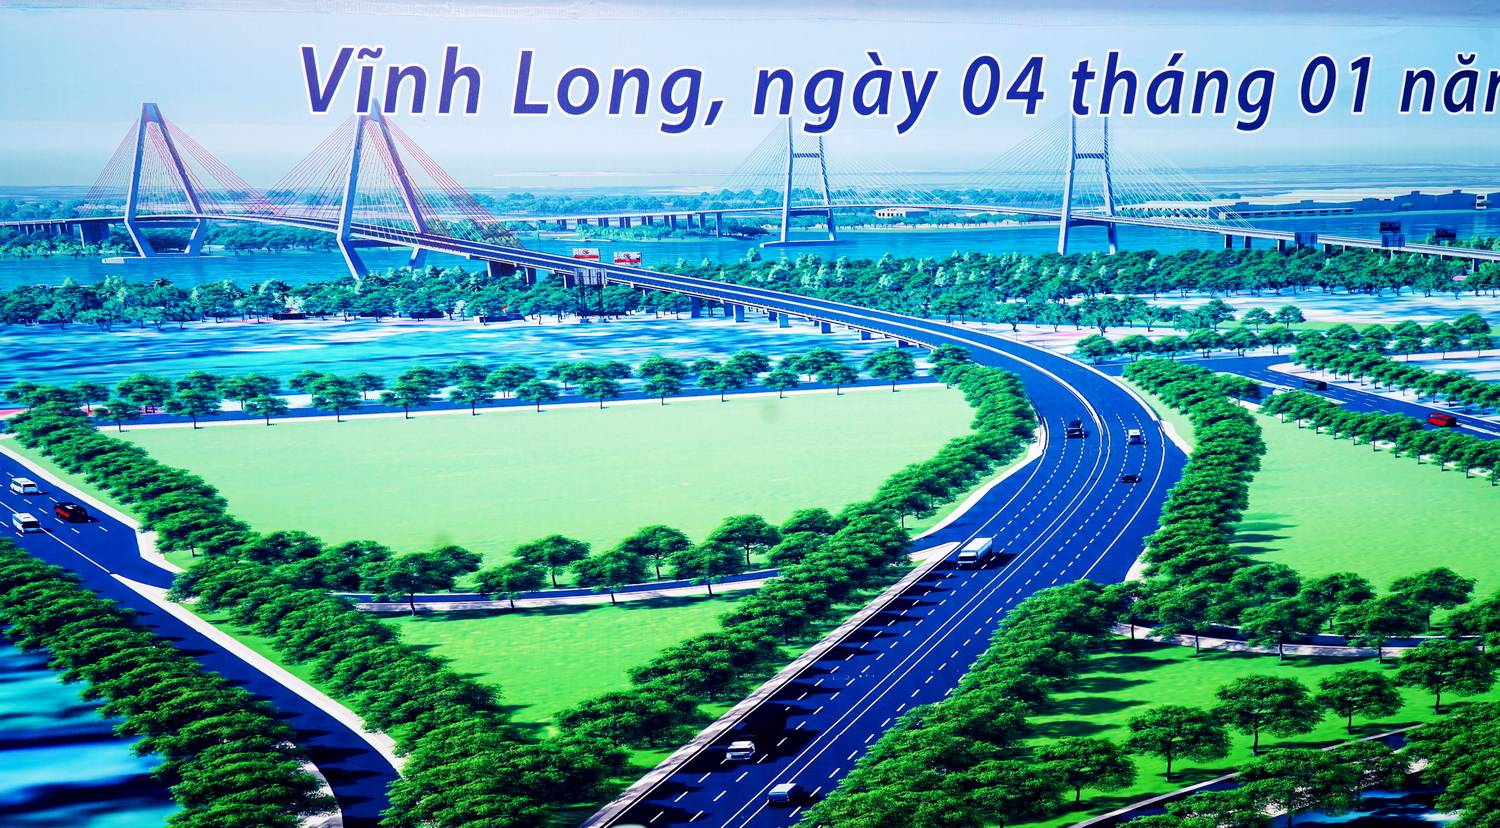 Tuyến đường cao tốc Mỹ Thuận - Cần Thơ là một trong những tuyến đường huyết mạch kết nối các địa bàn trọng điểm thuộc khu vực ĐBSCL, được nhân dân và chính quyền các địa phương thực sự quan tâm, mong đợi.